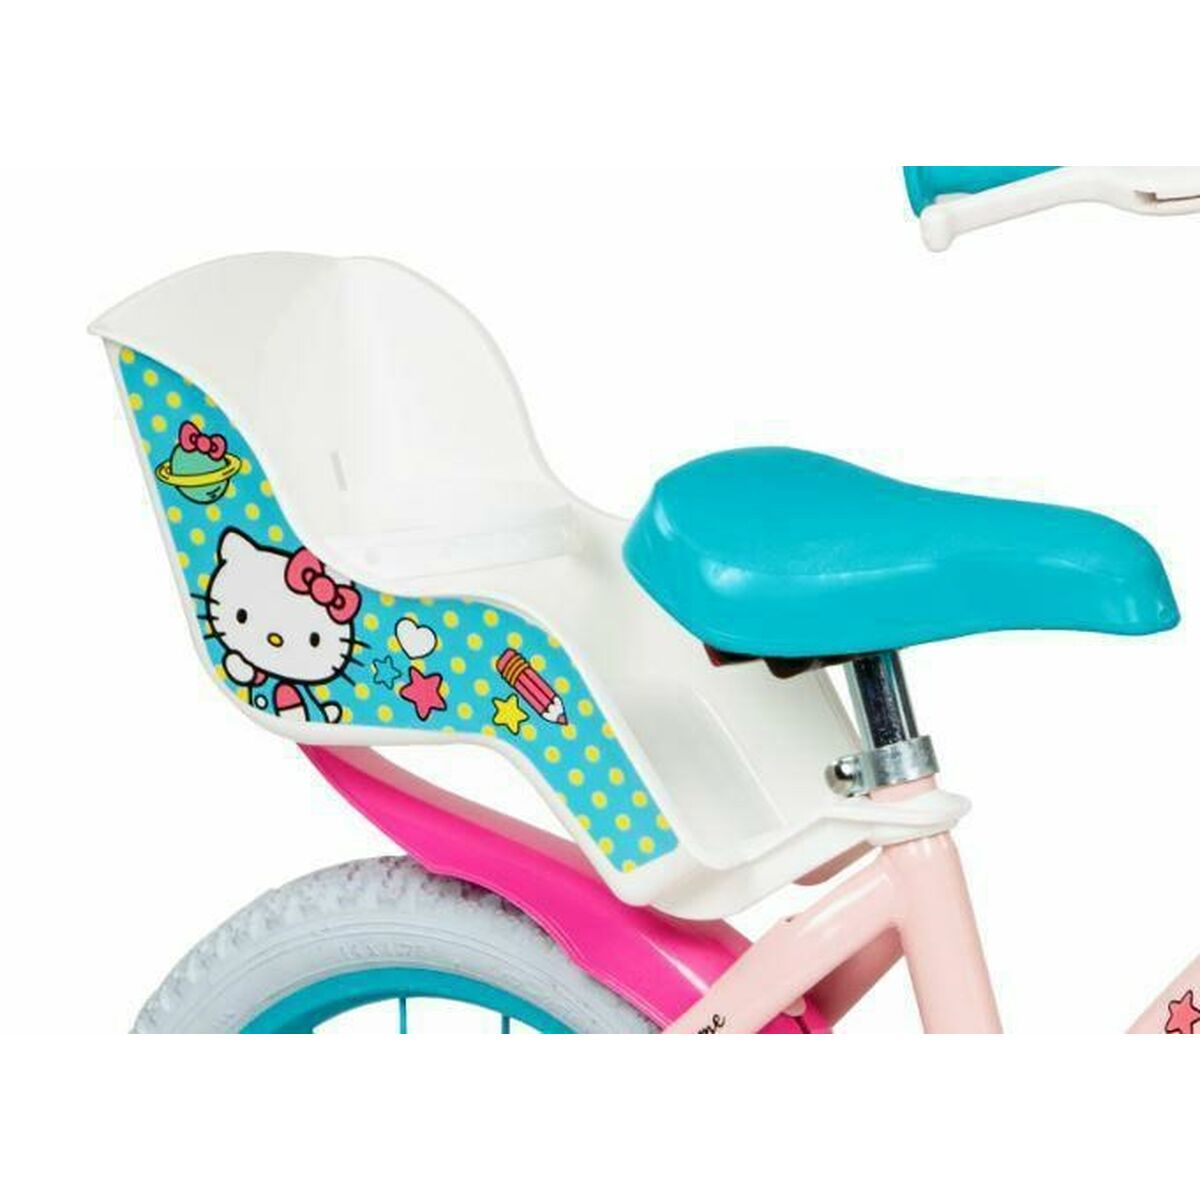 Children's Bike Toimsa Hello Kitty